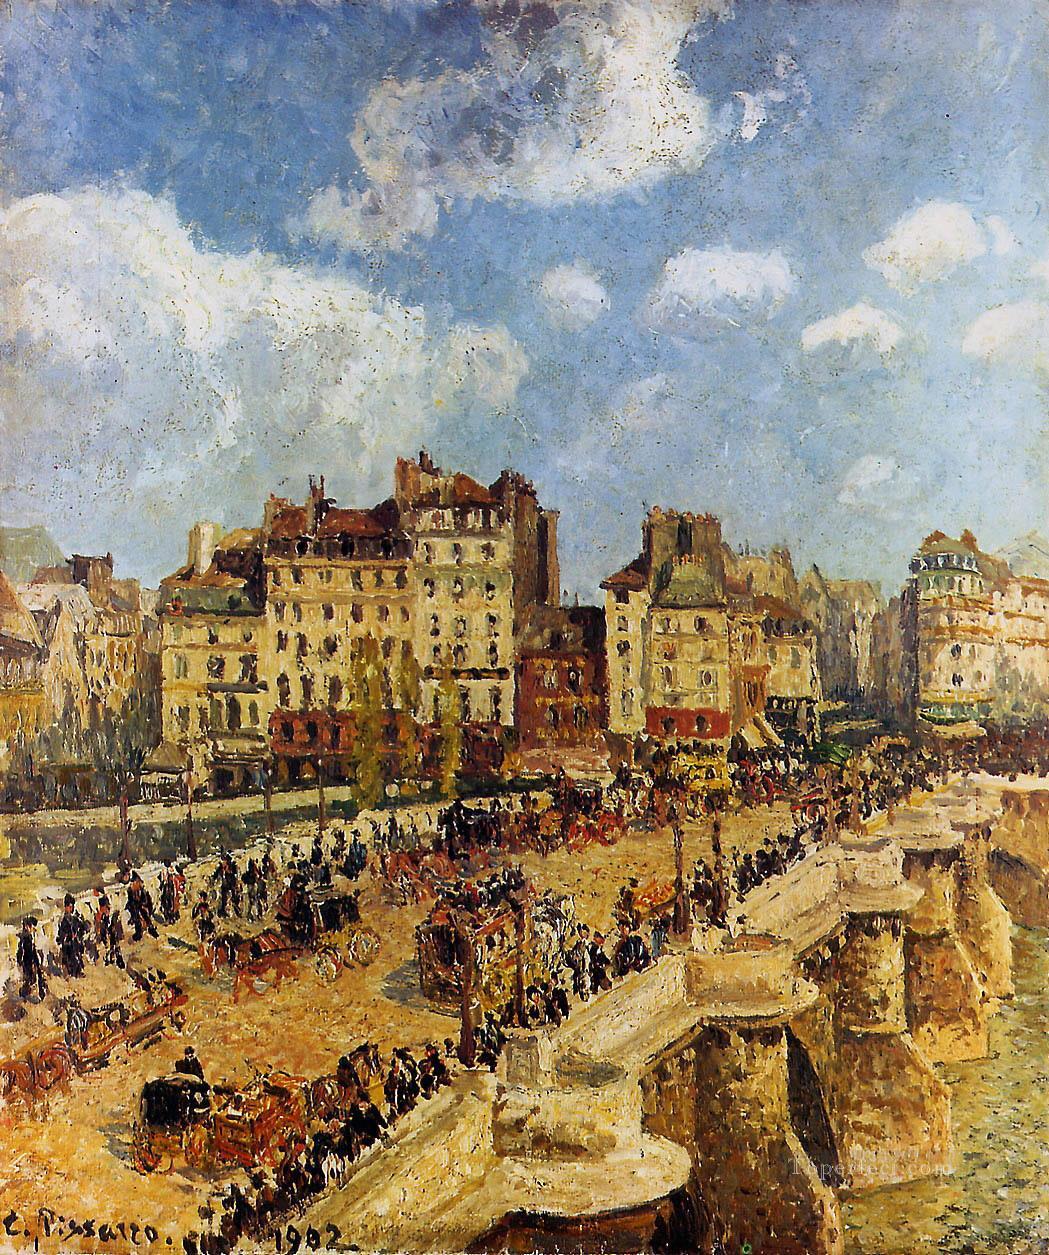 ポンヌフ 1902年 カミーユ・ピサロ パリジャン油絵